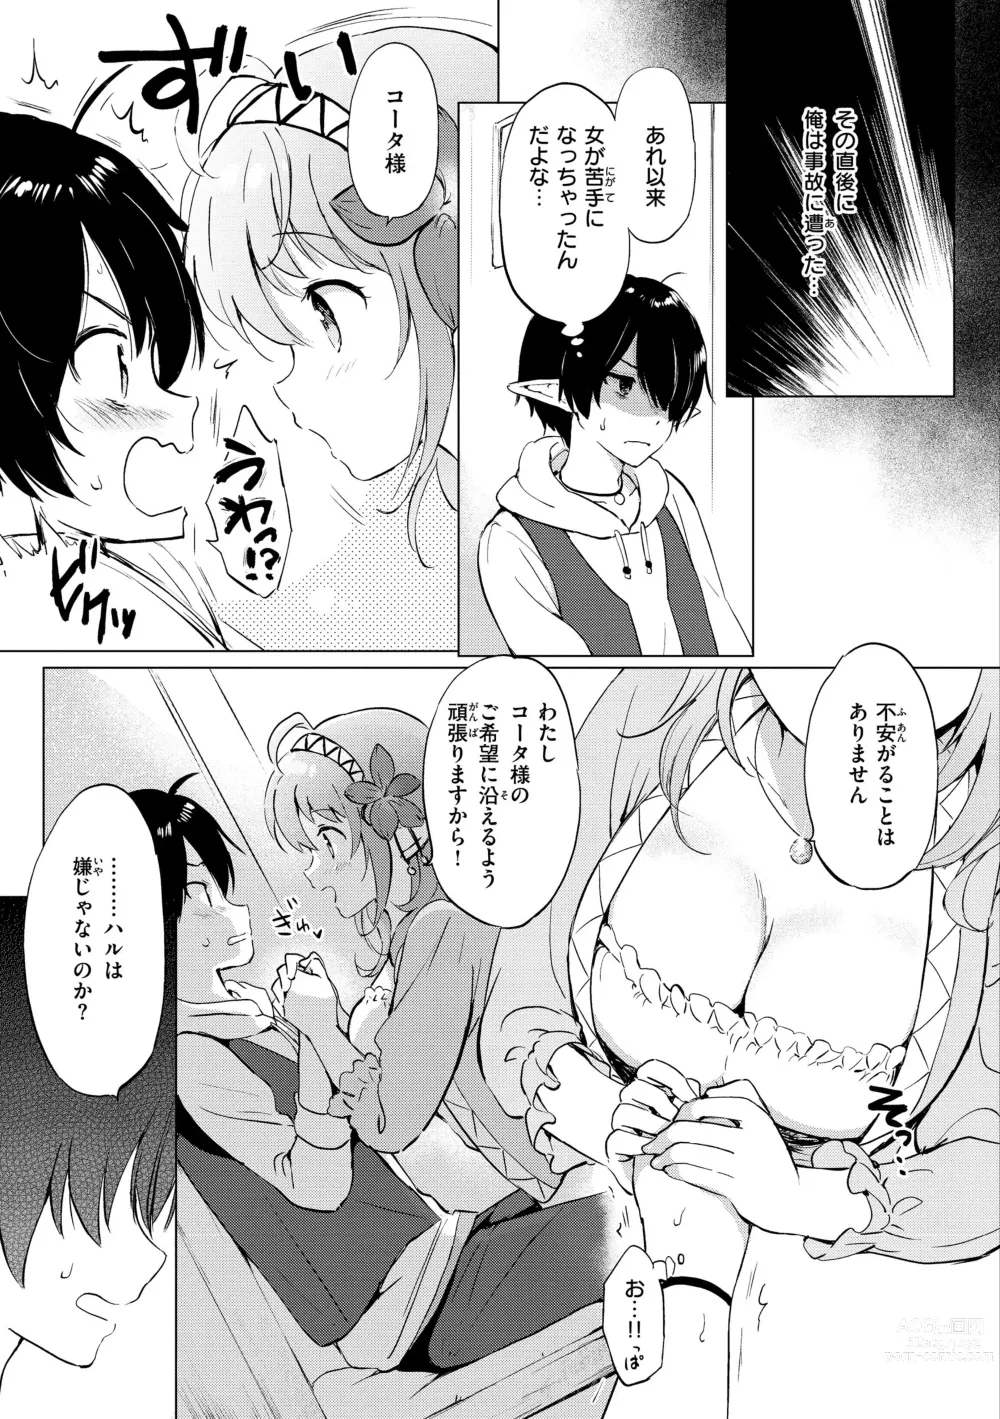 Page 11 of manga Mitsugetsu Paradise - Honeymoon Paradise